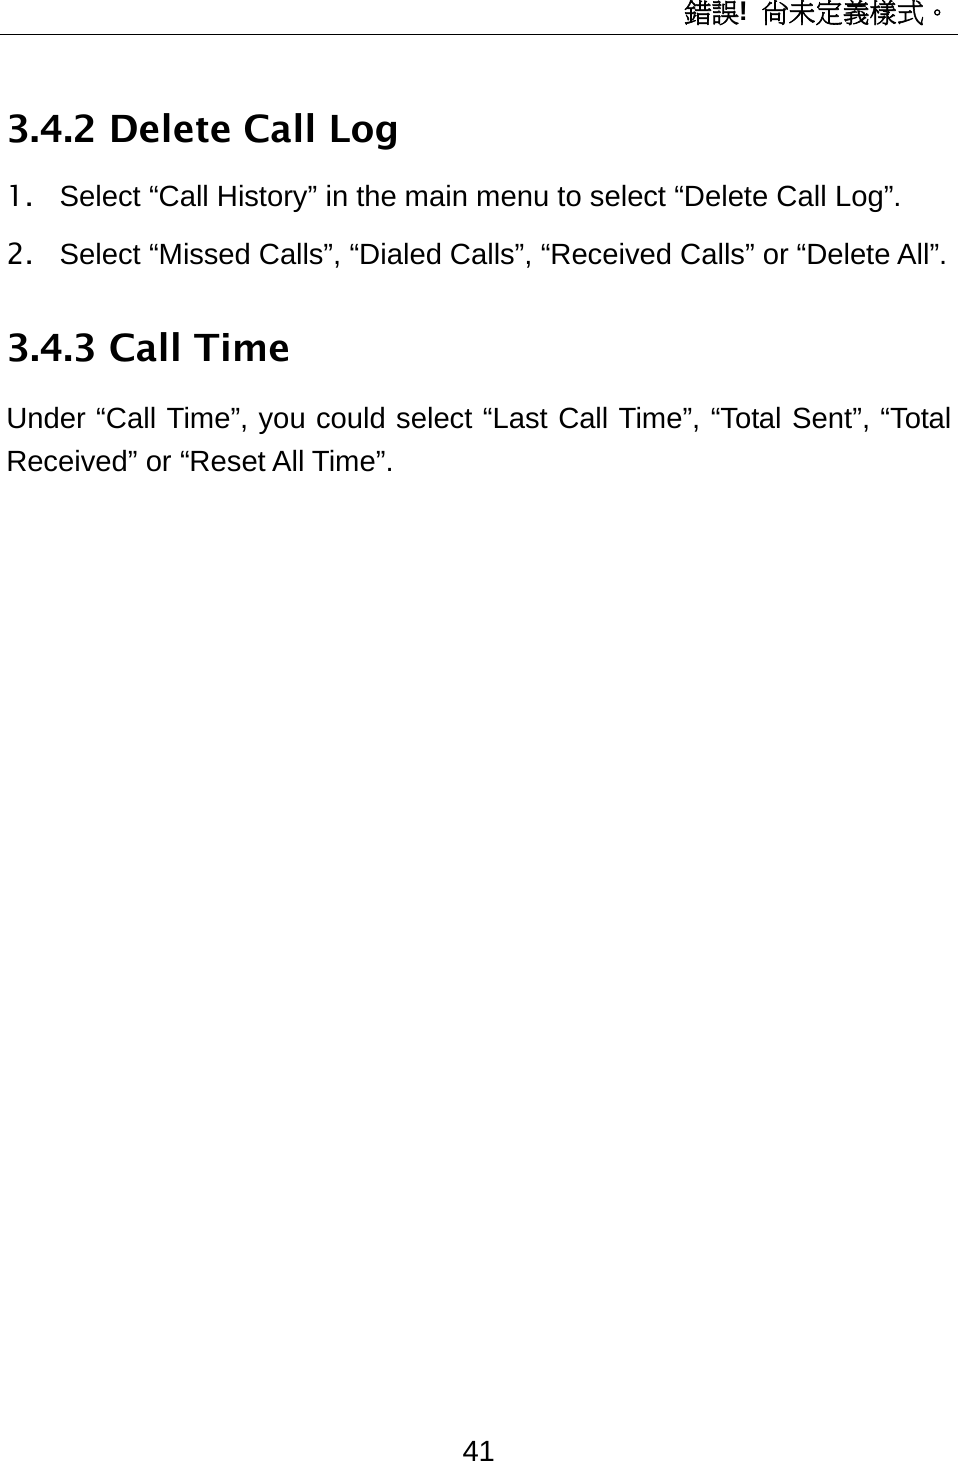 錯誤!  尚未定義樣式。 41 3.4.2 Delete Call Log 1.  Select “Call History” in the main menu to select “Delete Call Log”. 2.  Select “Missed Calls”, “Dialed Calls”, “Received Calls” or “Delete All”.   3.4.3 Call Time Under “Call Time”, you could select “Last Call Time”, “Total Sent”, “Total Received” or “Reset All Time”. 